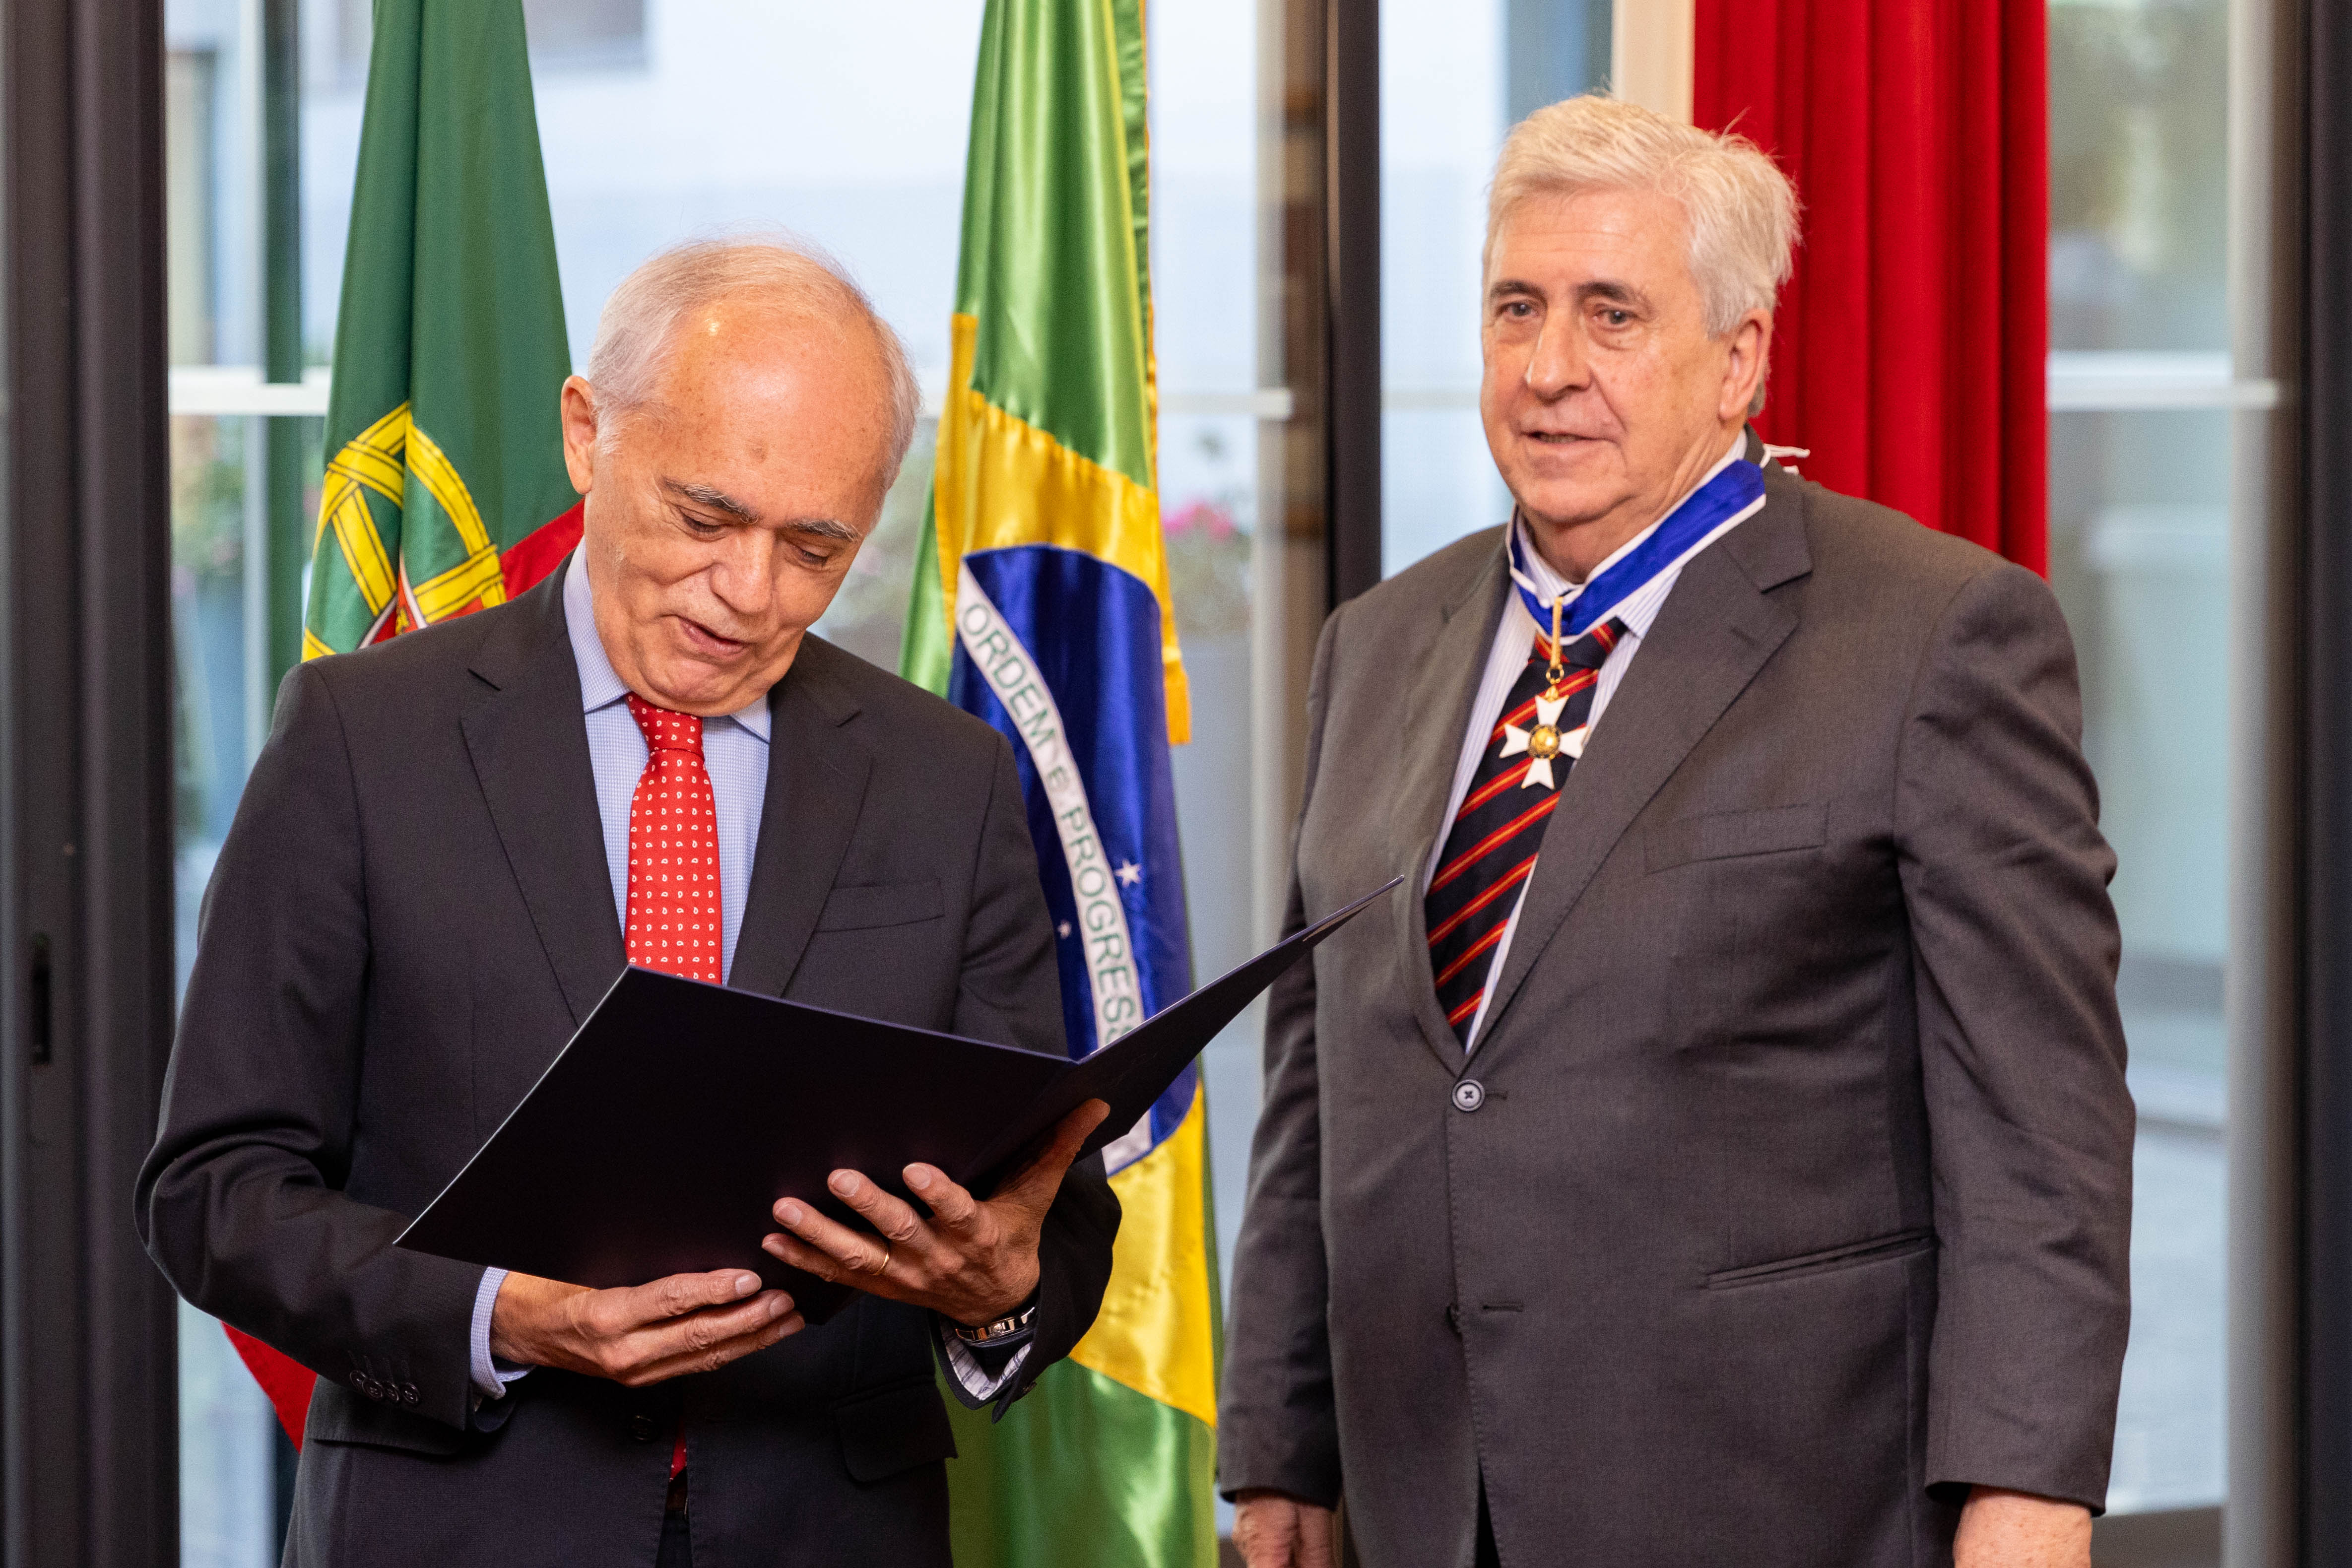 Jorge Rebelo de Almeida condecorado com grau de Comendador da Ordem de Rio Branco